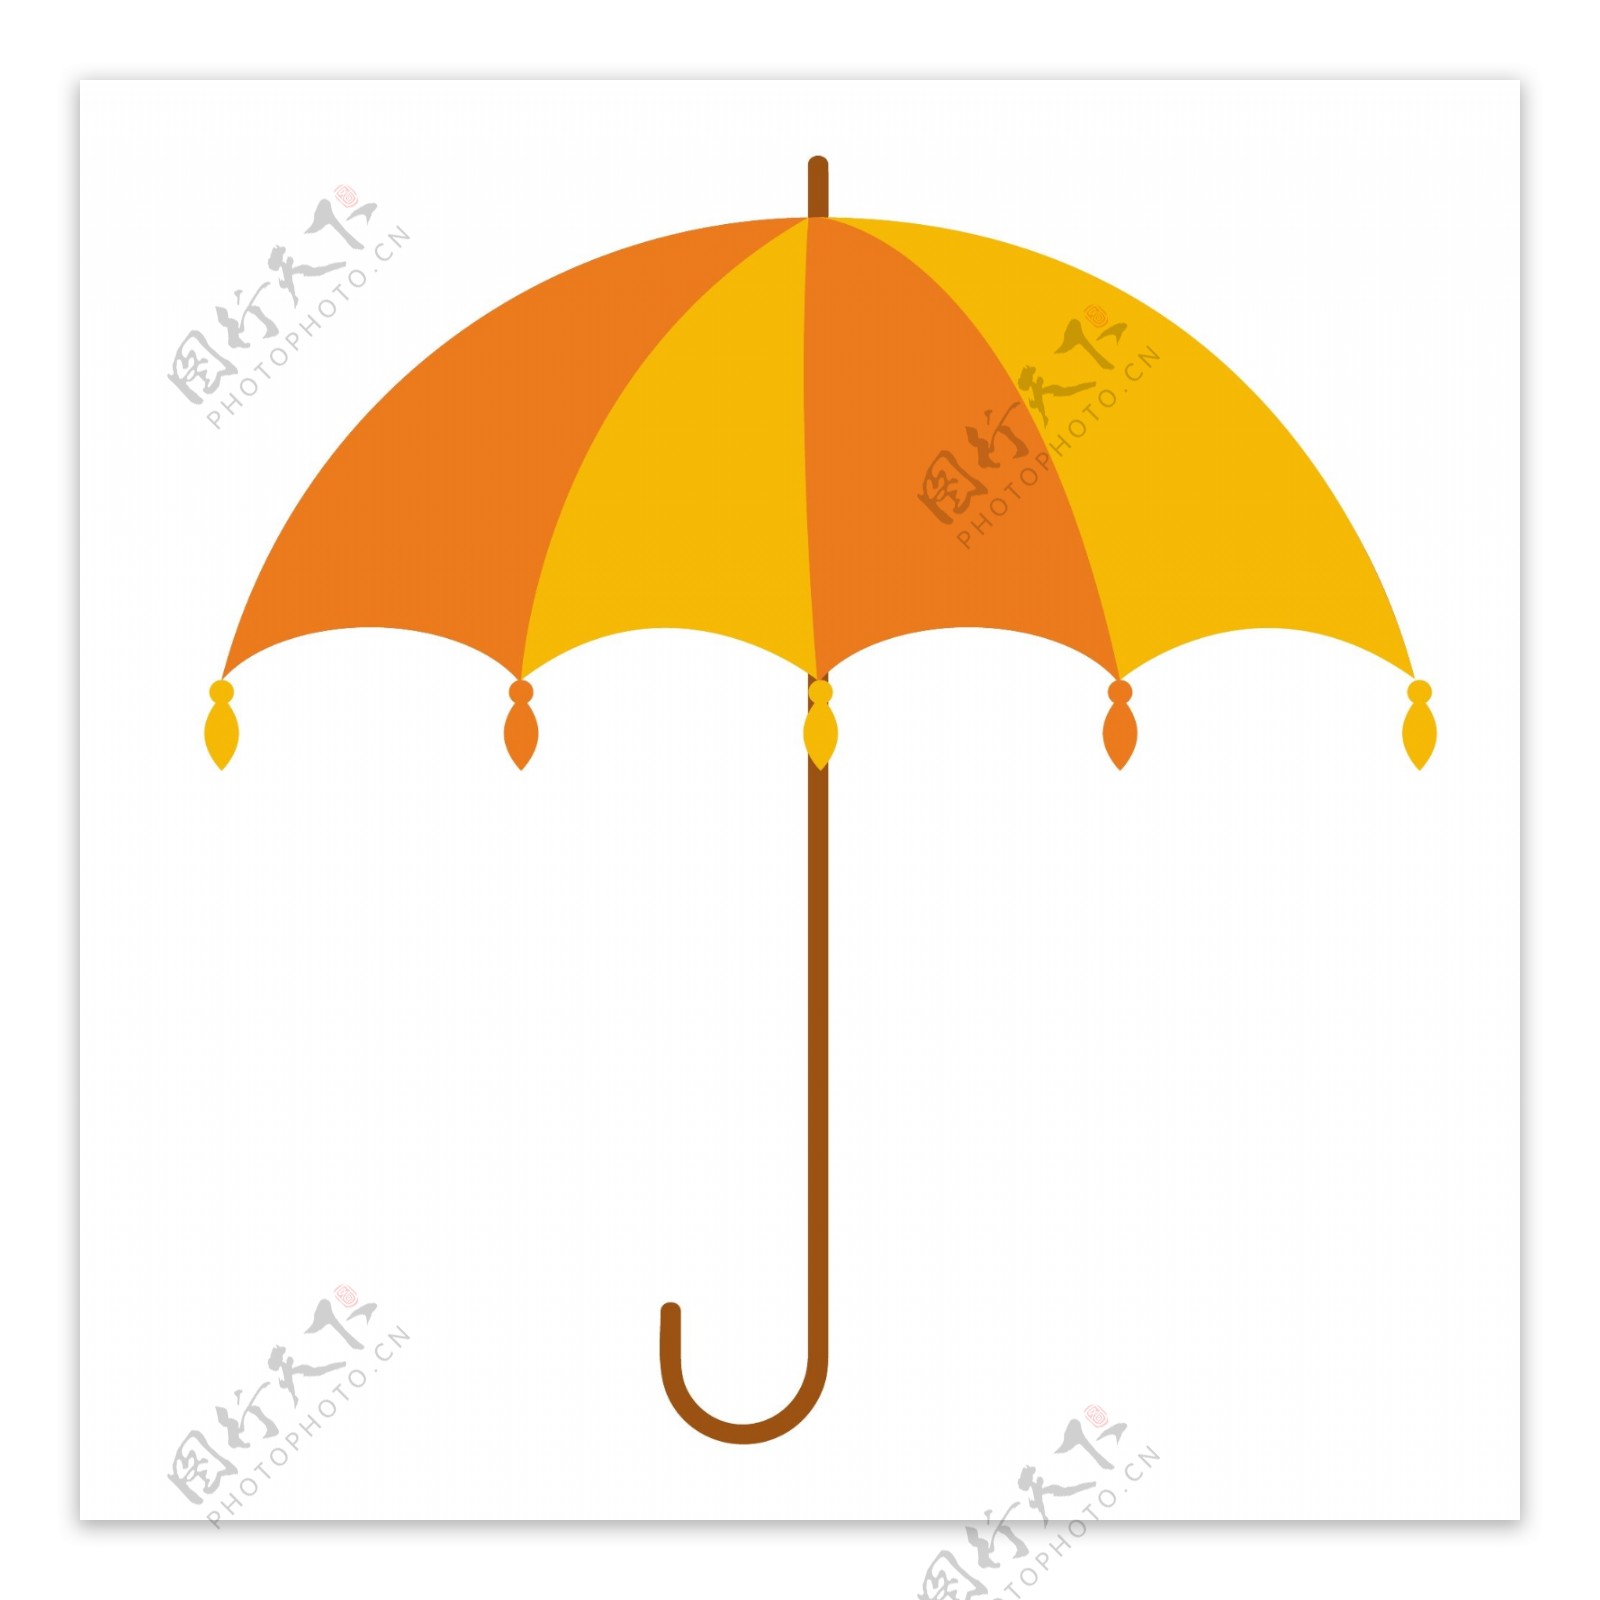 时尚雨伞